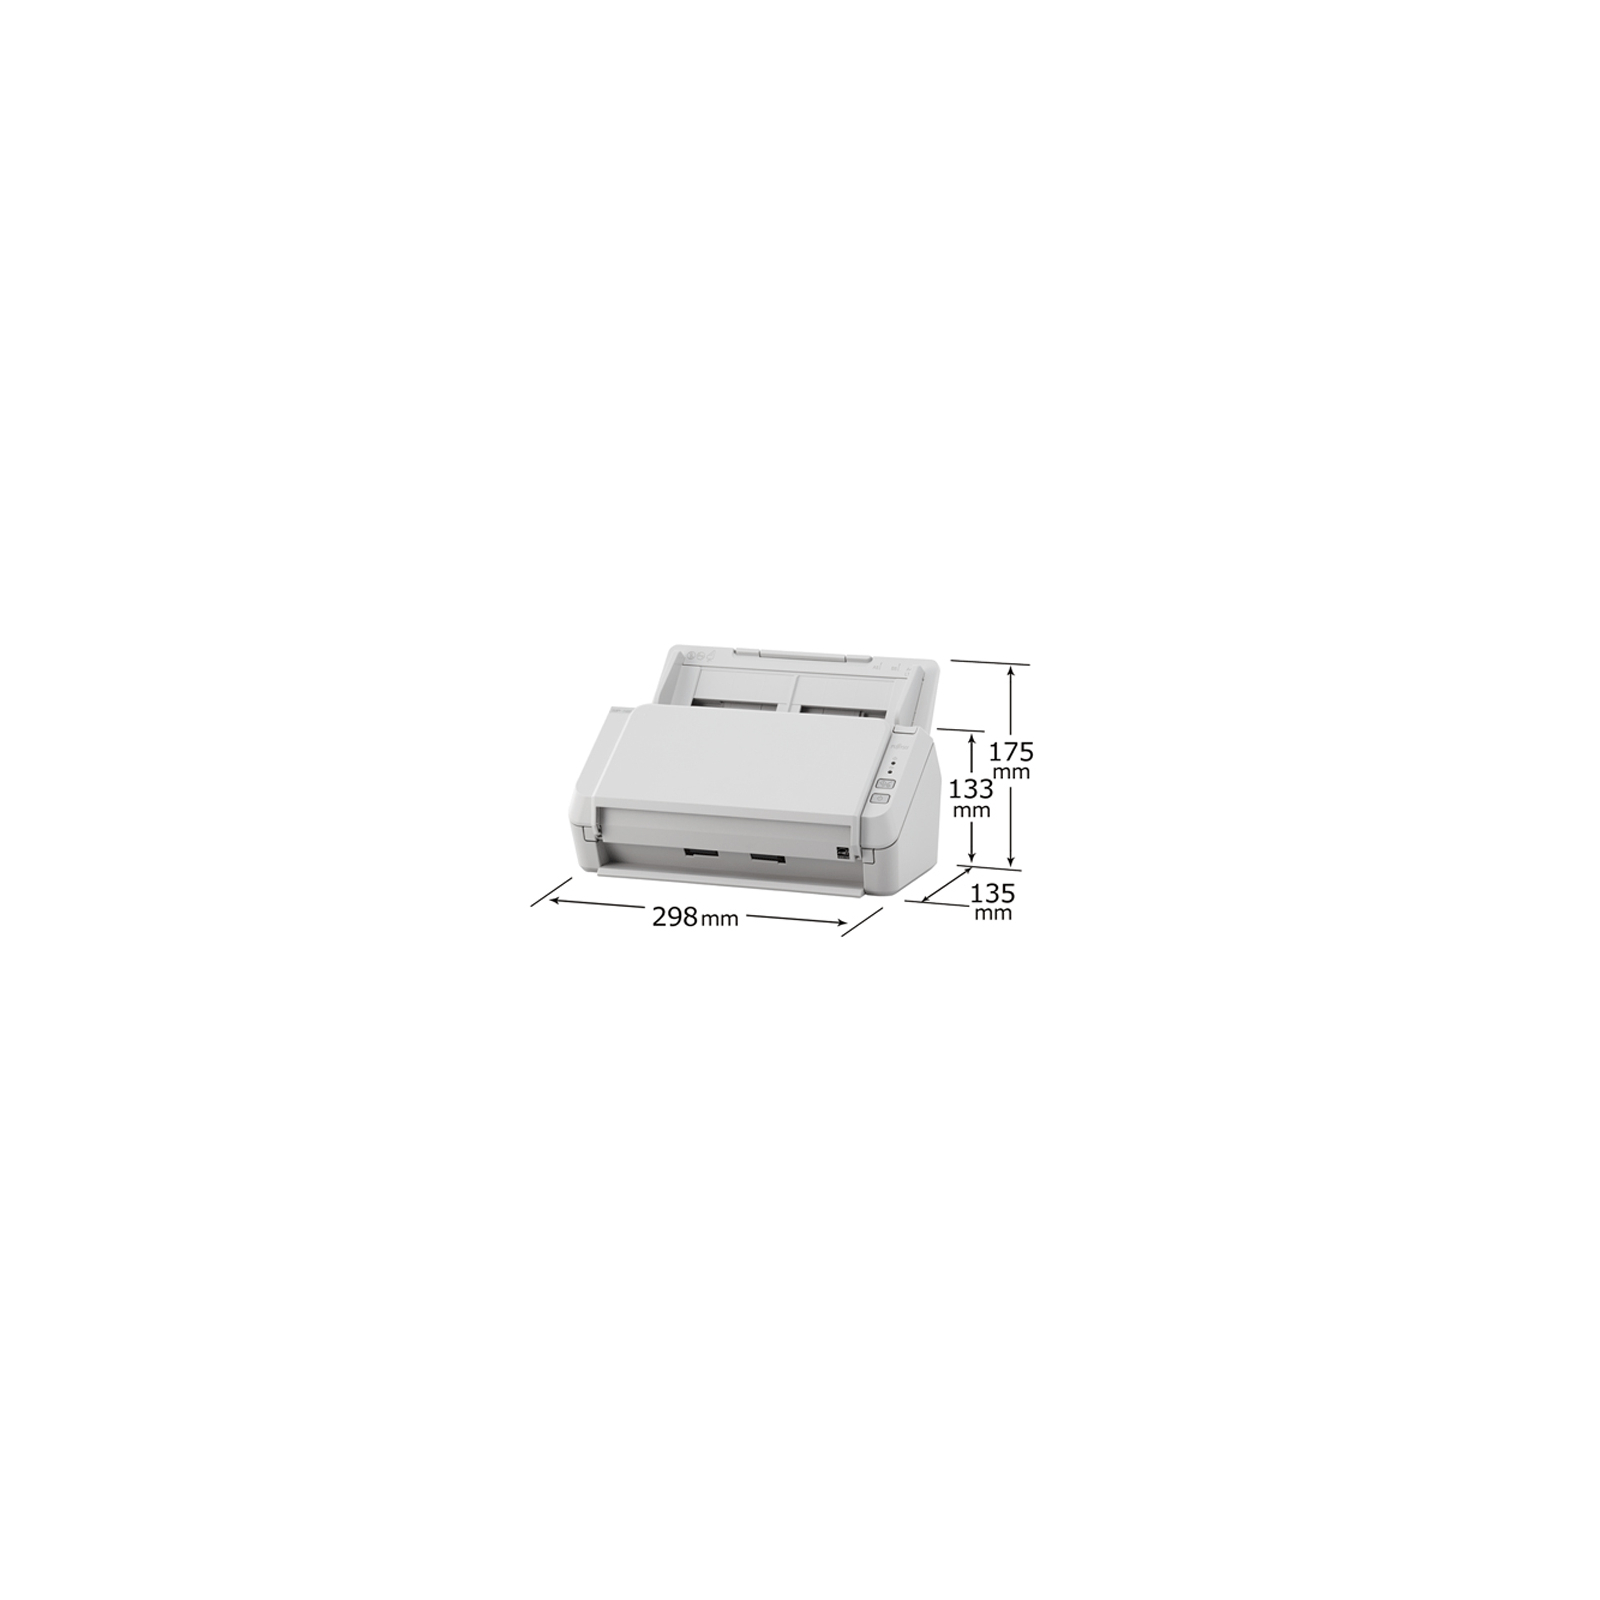 Сканер Fujitsu SP-1130 (PA03708-B021) изображение 6